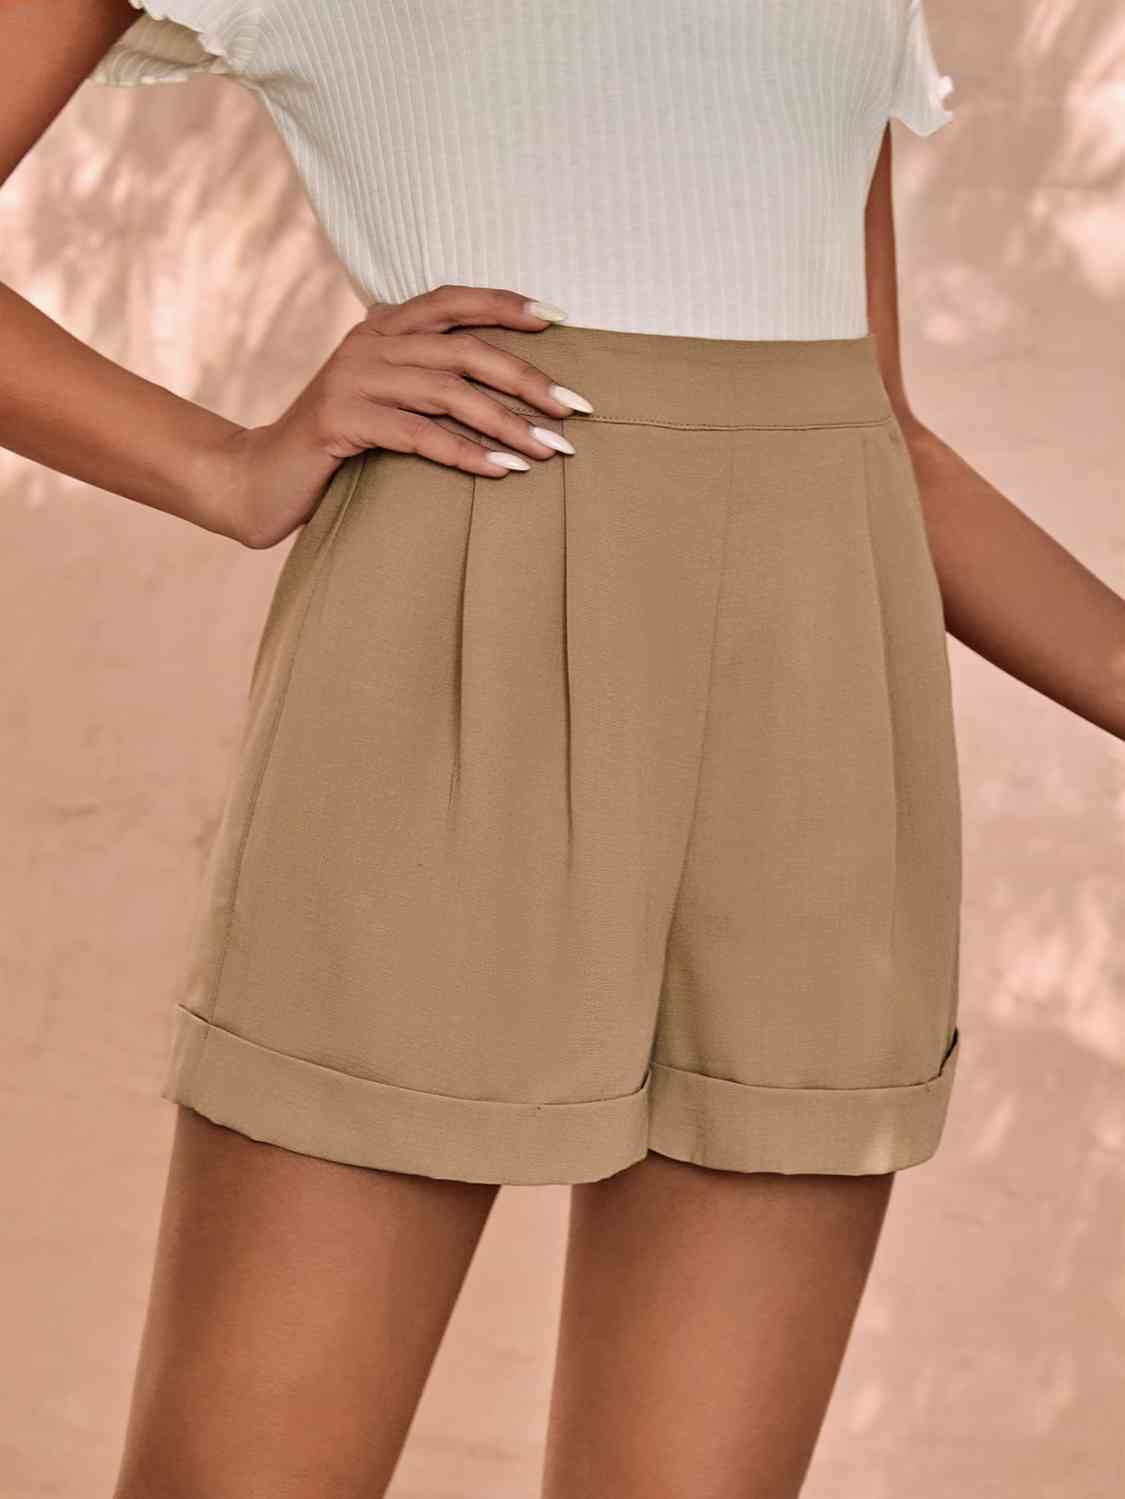 Khaki Shorts